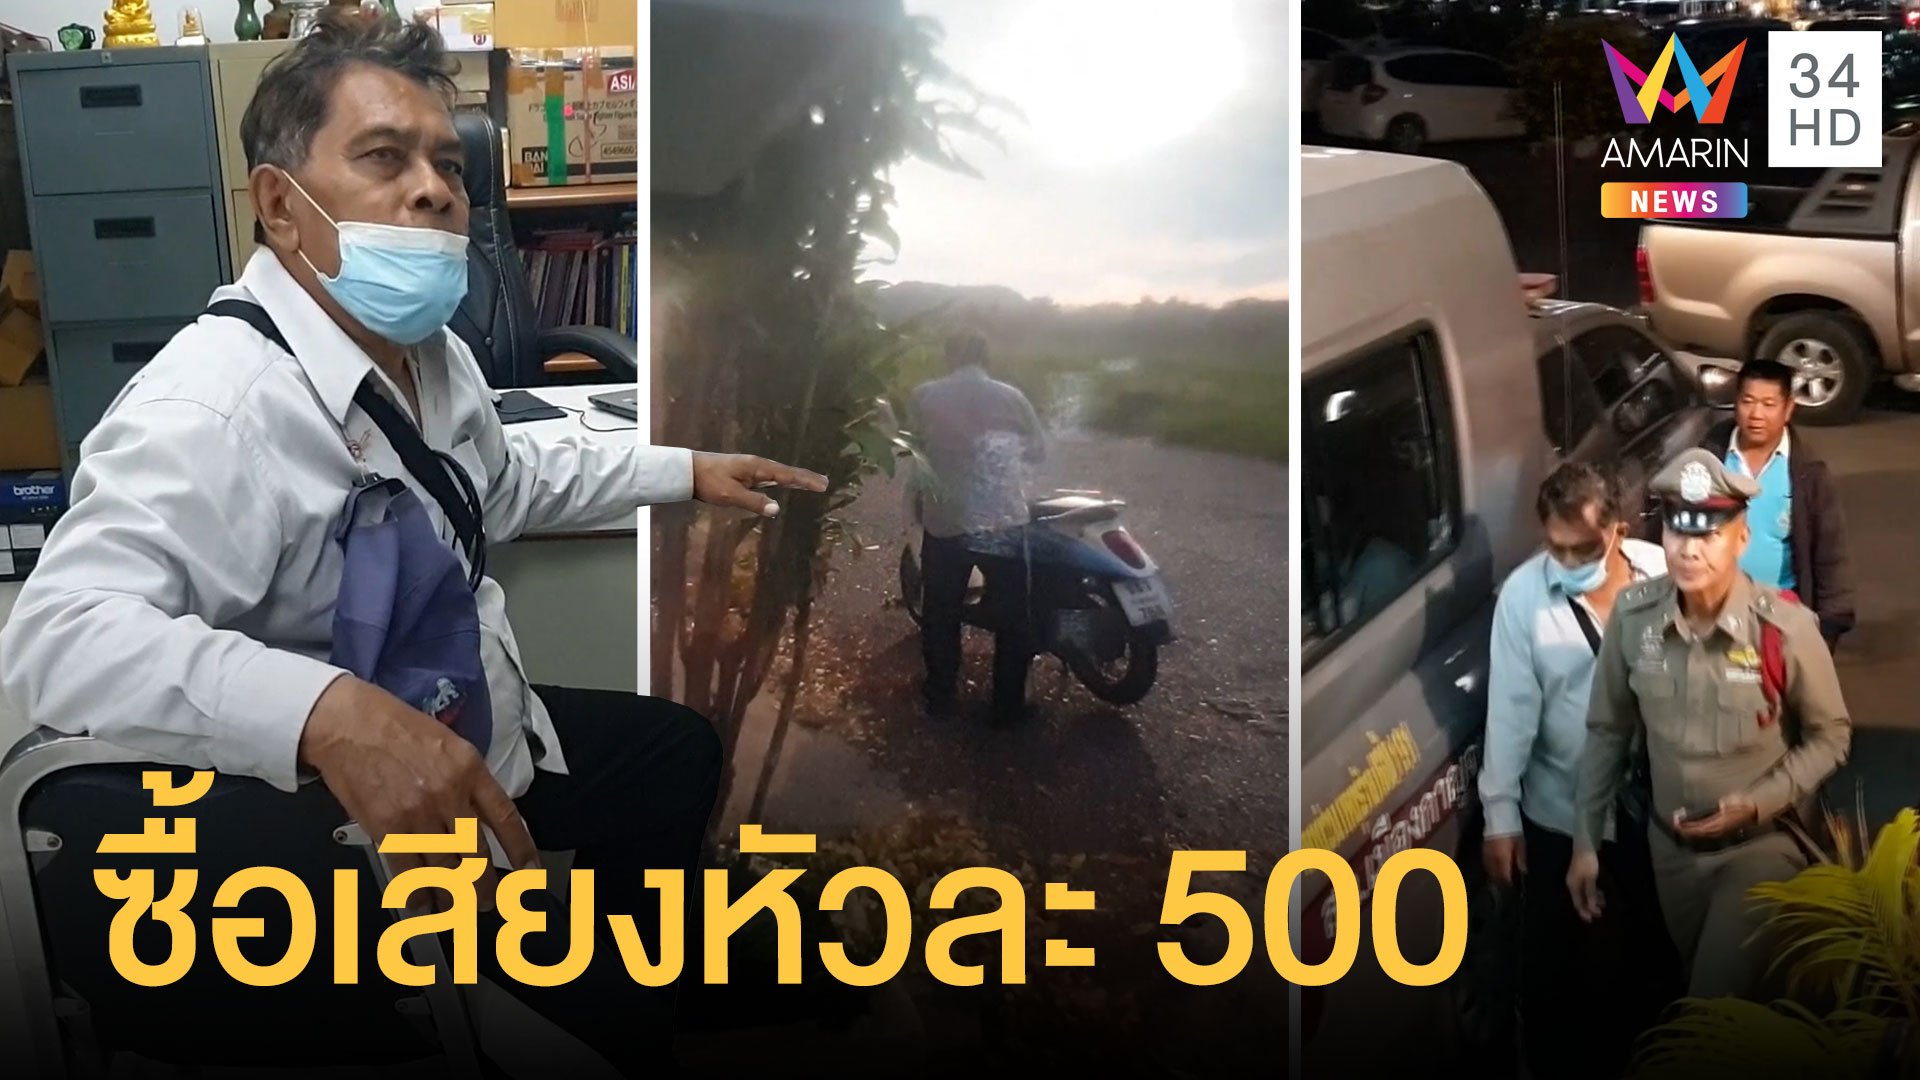 รวบอดีตทหาร ขี่รถซื้อเสียงชาวบ้านให้หัวละ 500 | ข่าวอรุณอมรินทร์ | 20 ธ.ค. 63 | AMARIN TVHD34